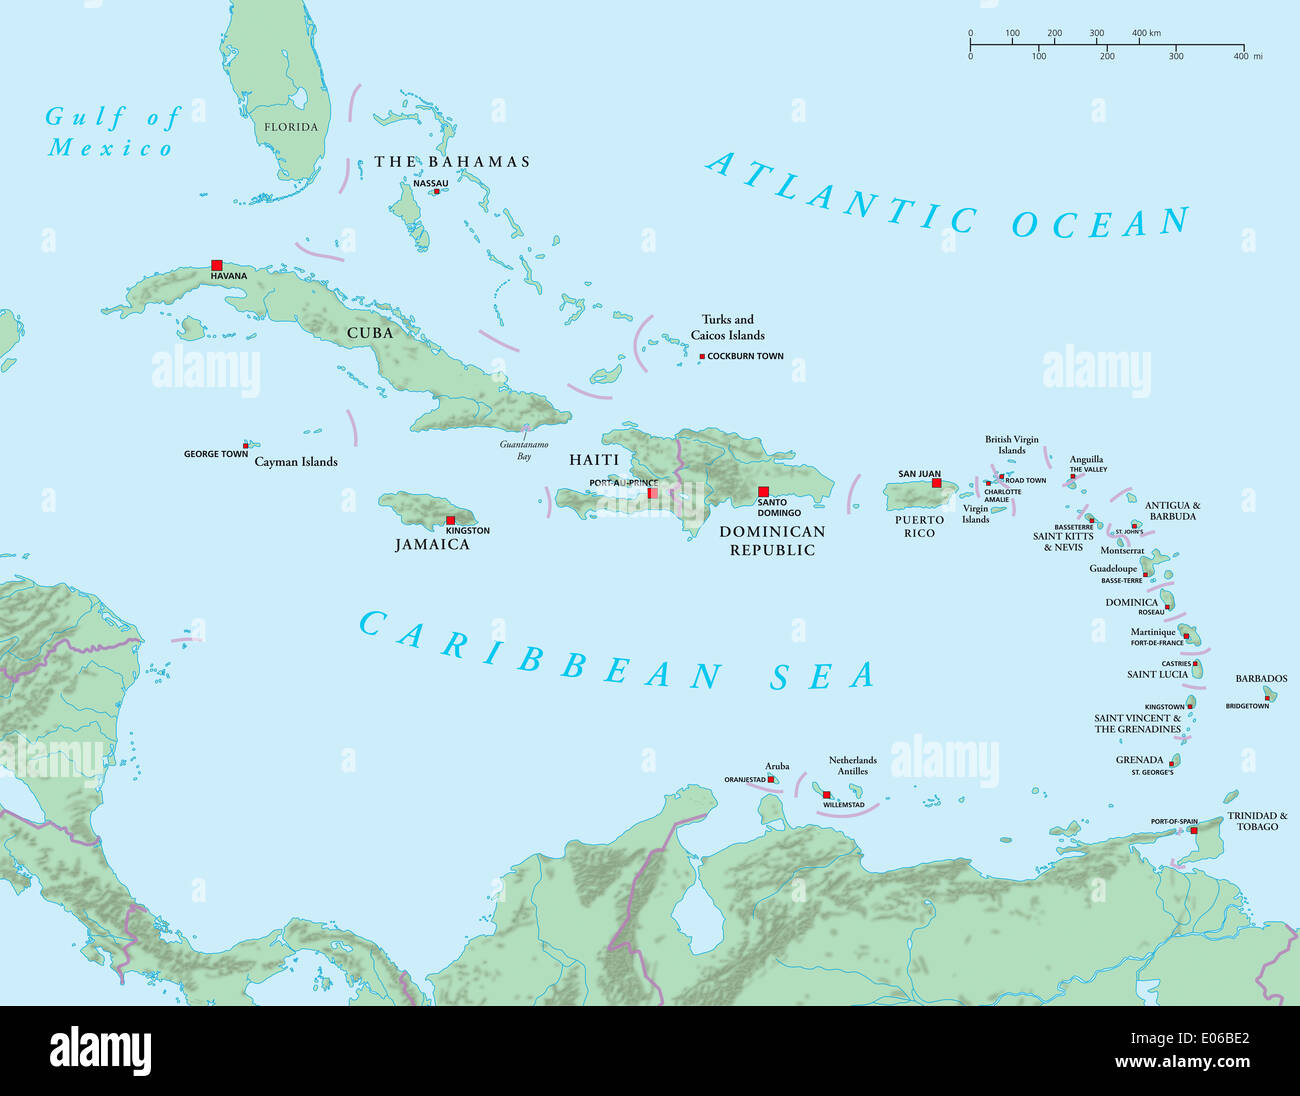 Karibik - großen und kleinen Antillen - politische Karte Stockfoto